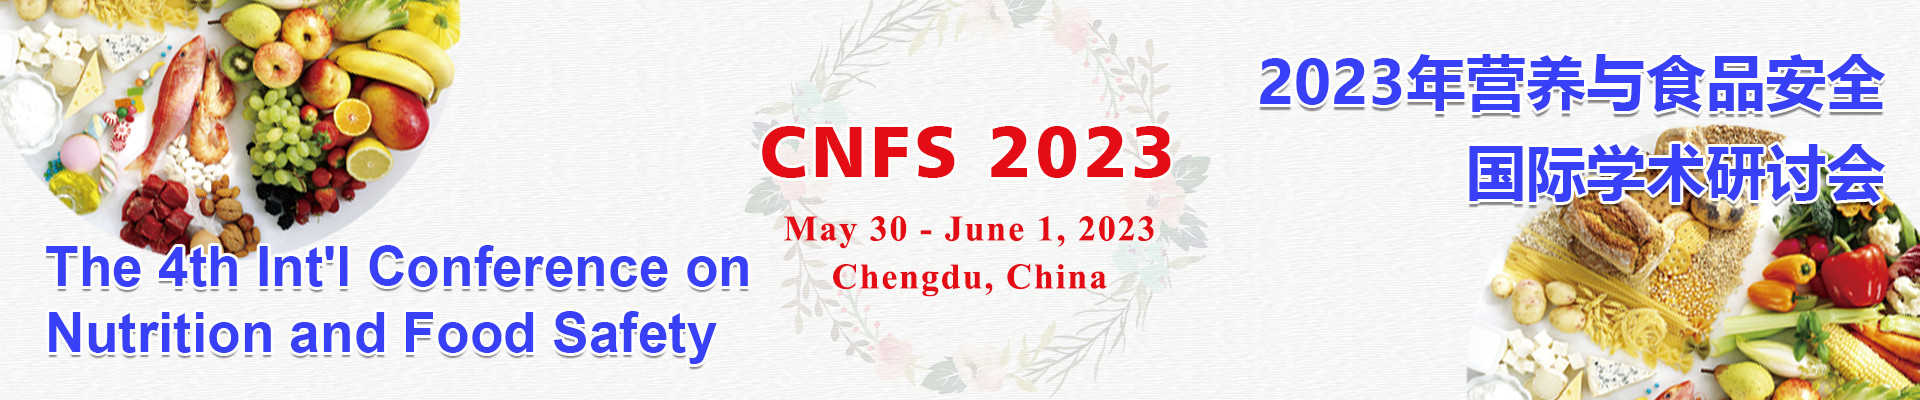 第四届营养与食品安全国际学术研讨会(CNFS 2023)